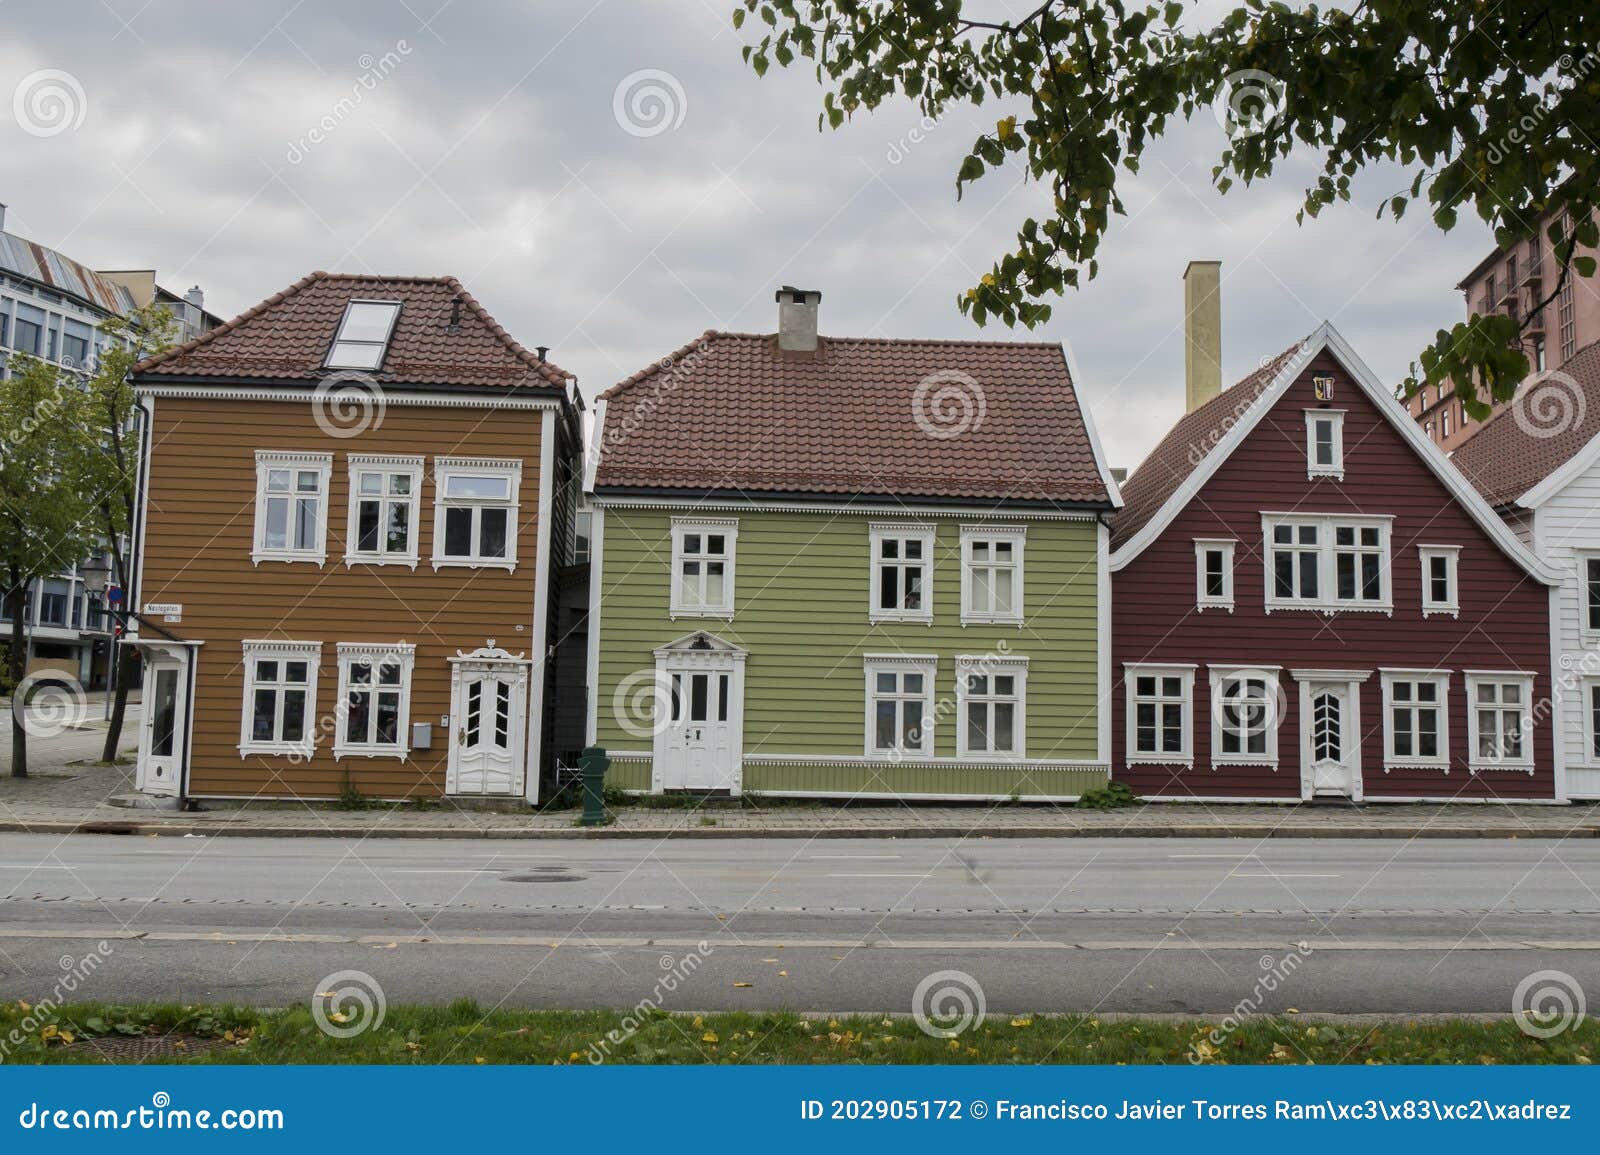 nice wooden houses in copenhagen, denmark